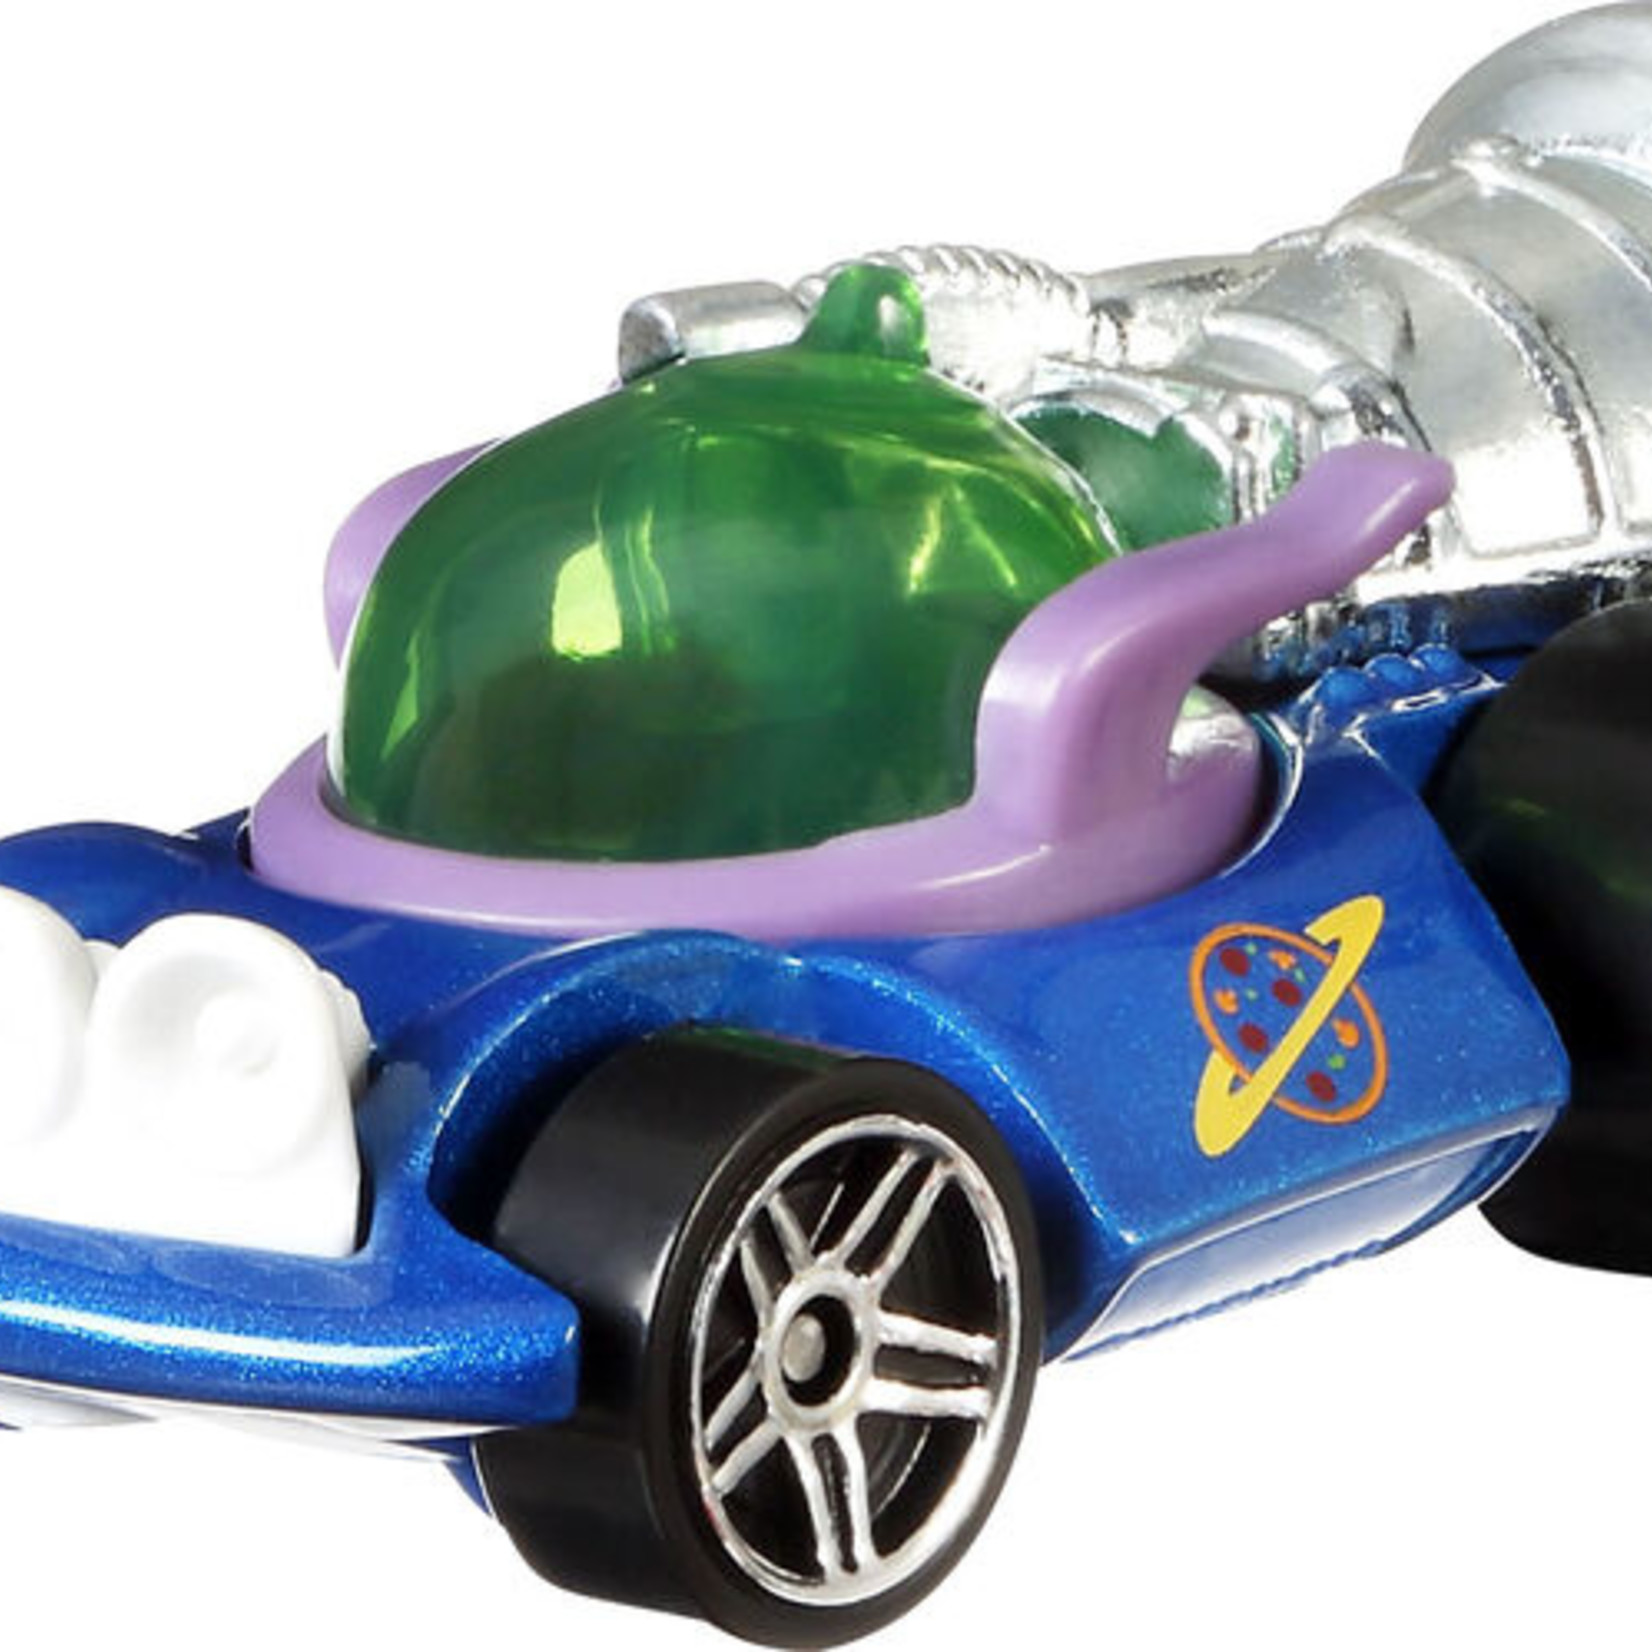 Hot Wheels Hot Wheels - Toy Story 4 - Alien